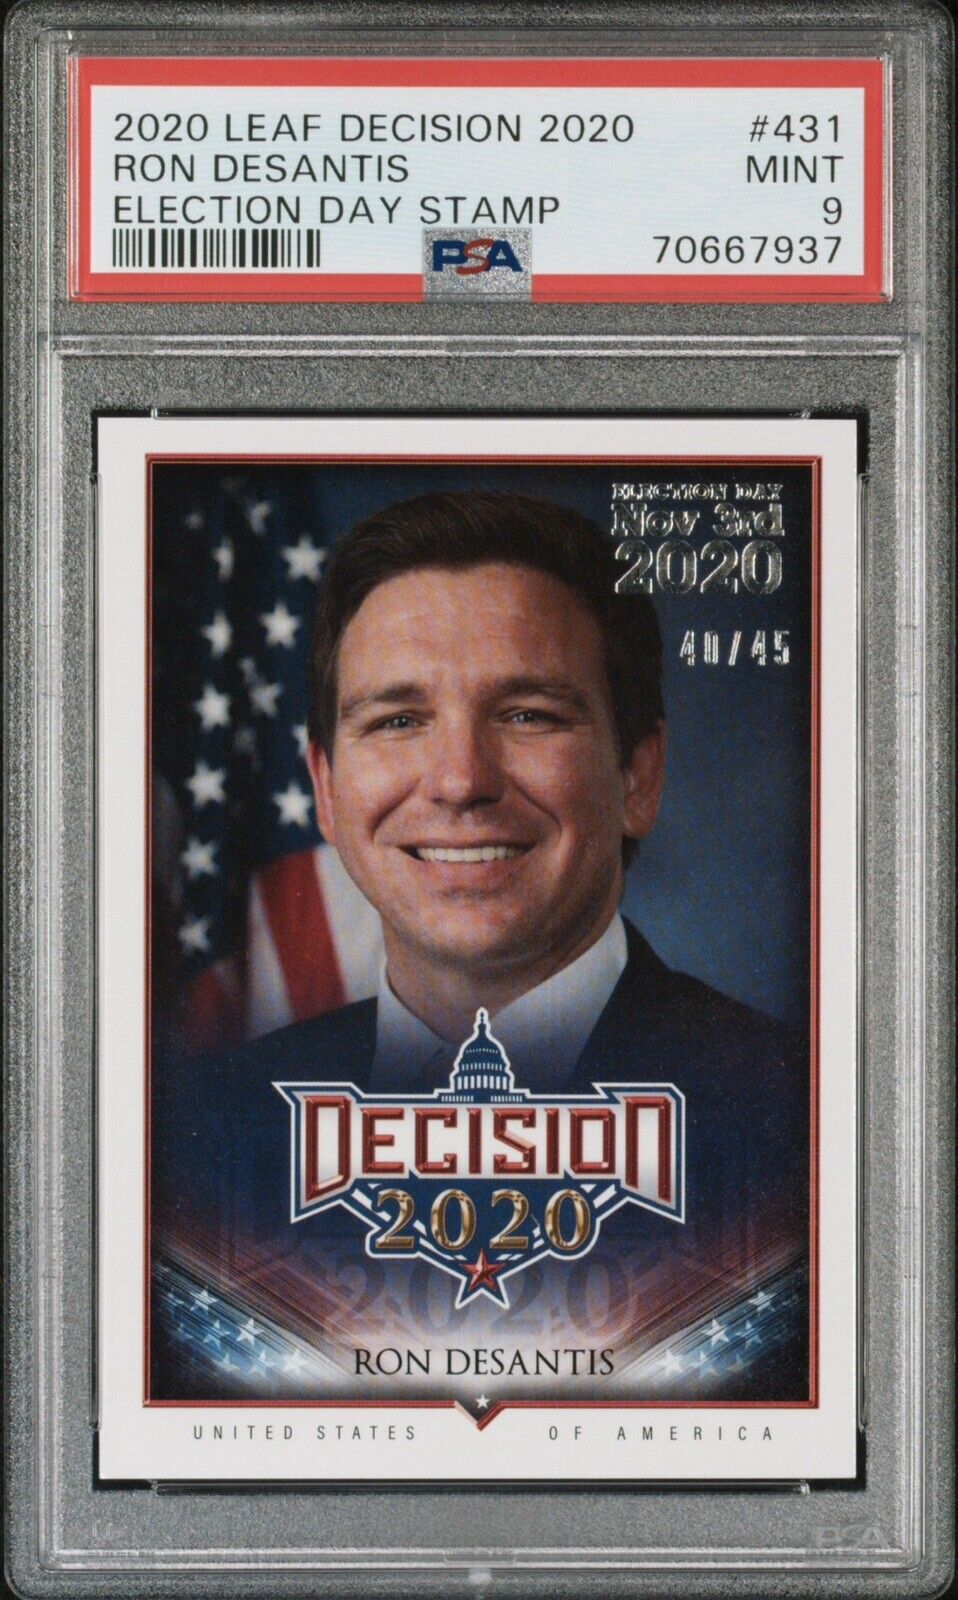 Ron Desantis 2020 Leaf Decision #431 Election Day Stamp Rookie RC /45 PSA 9 Mint